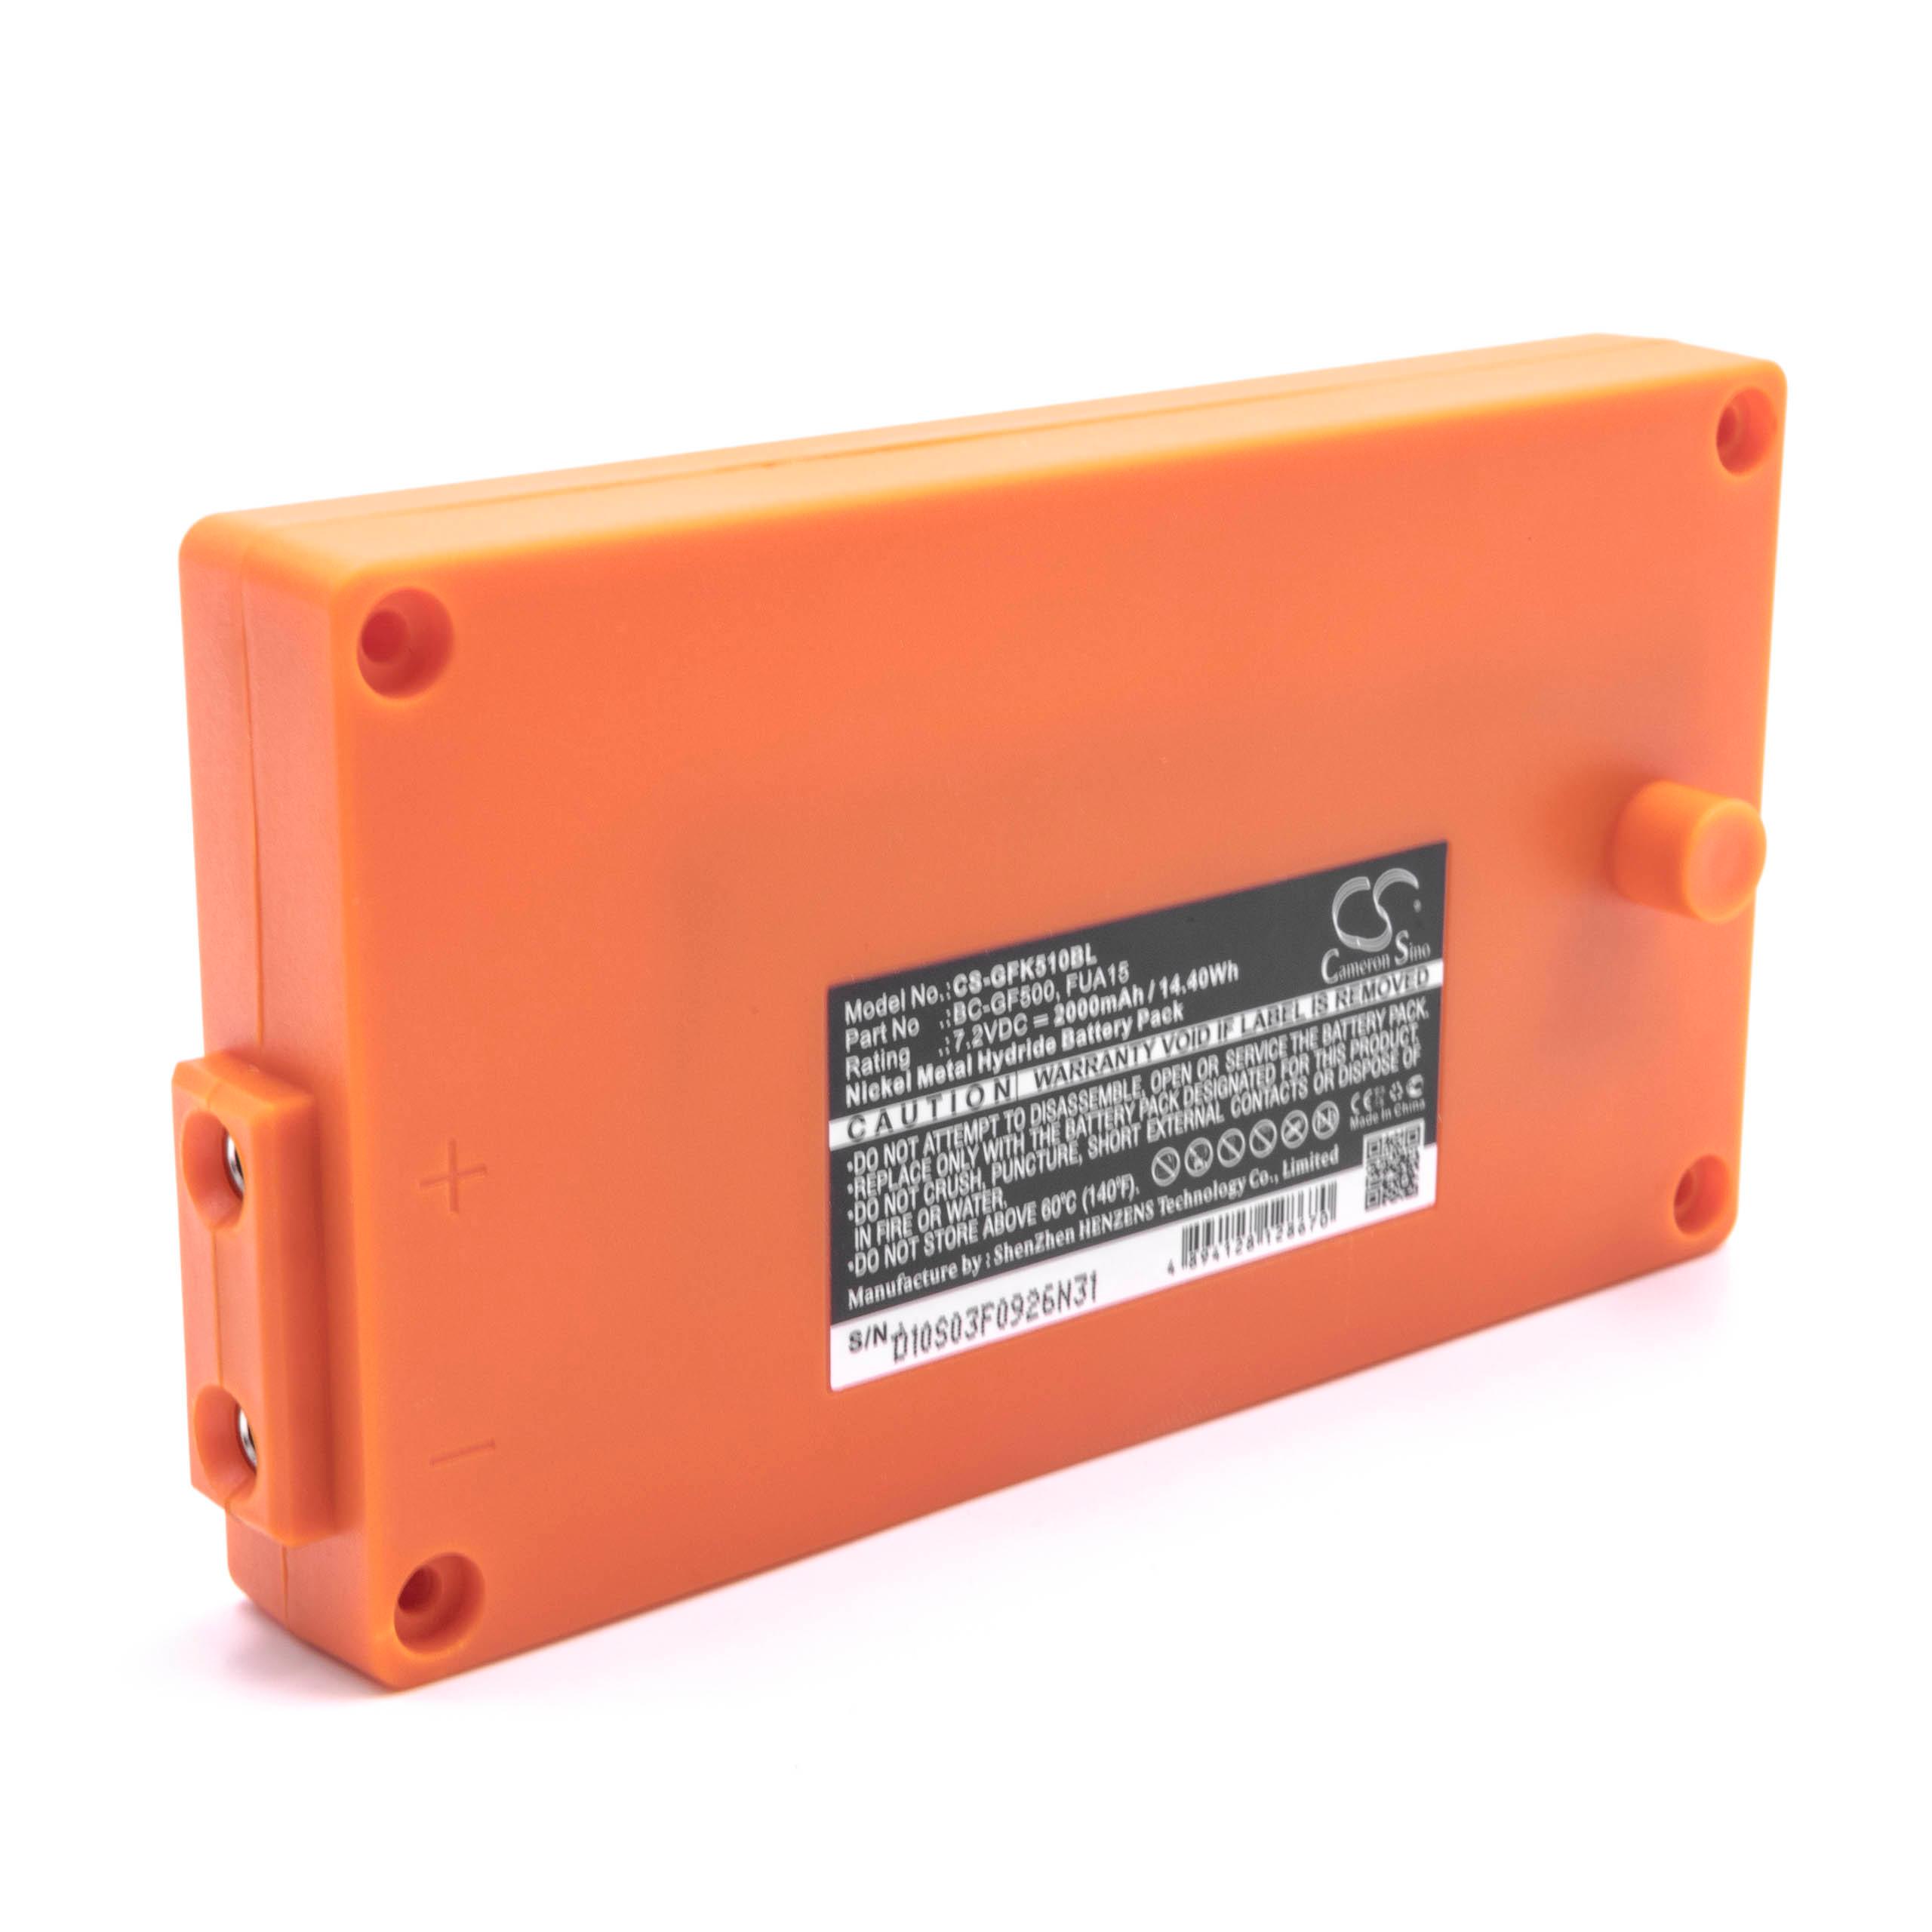 Batterie remplace Gross Funk BC-GF500, 100-001-885, FUA15 pour télécomande industrielle - 2000mAh 7,2V NiMH